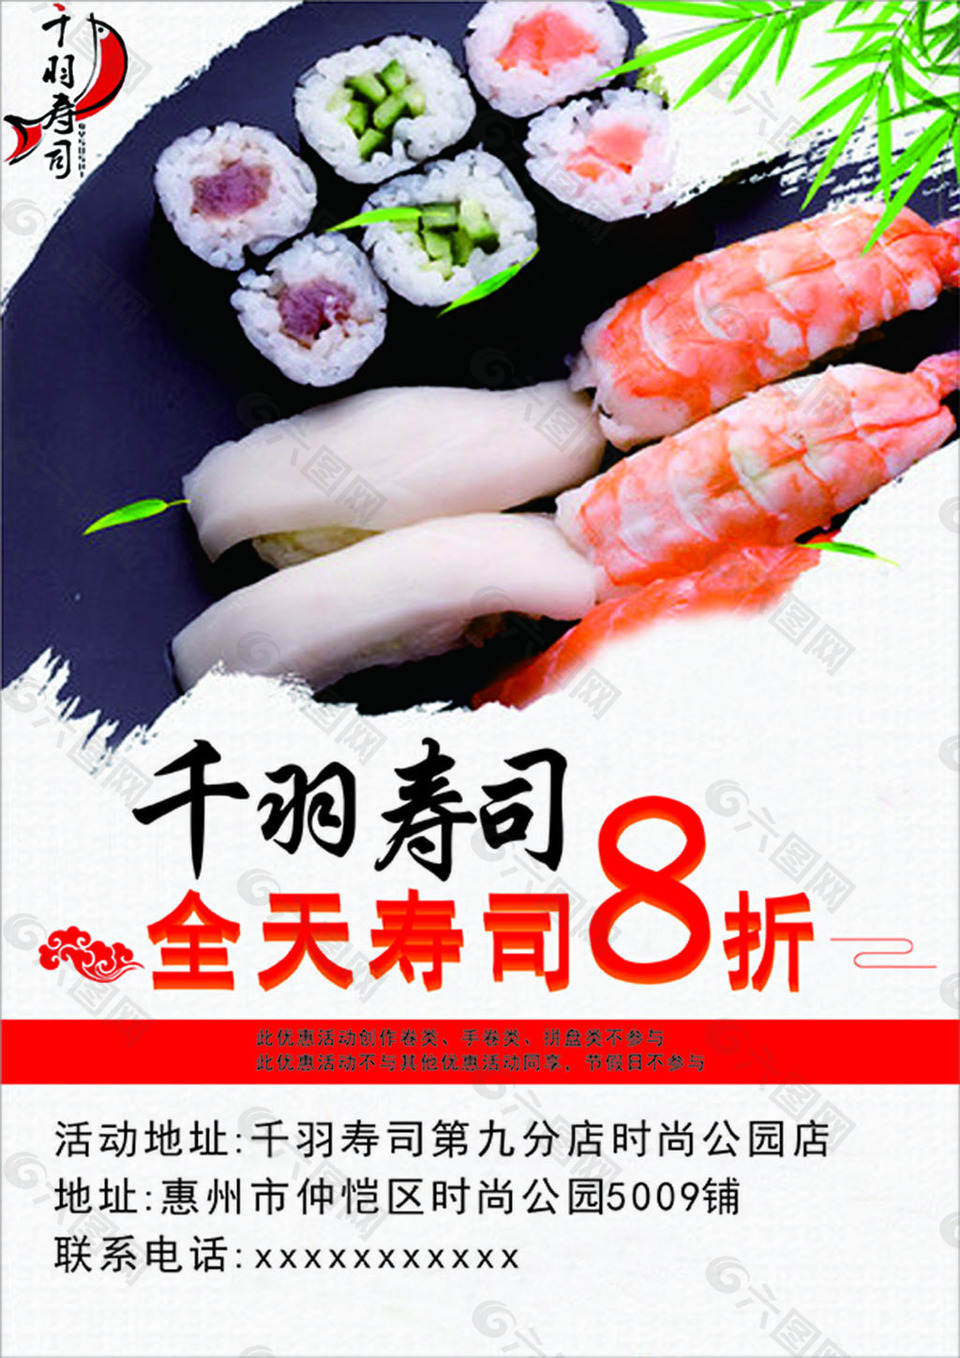 寿司宣传单平面广告素材免费下载 图片编号 六图网